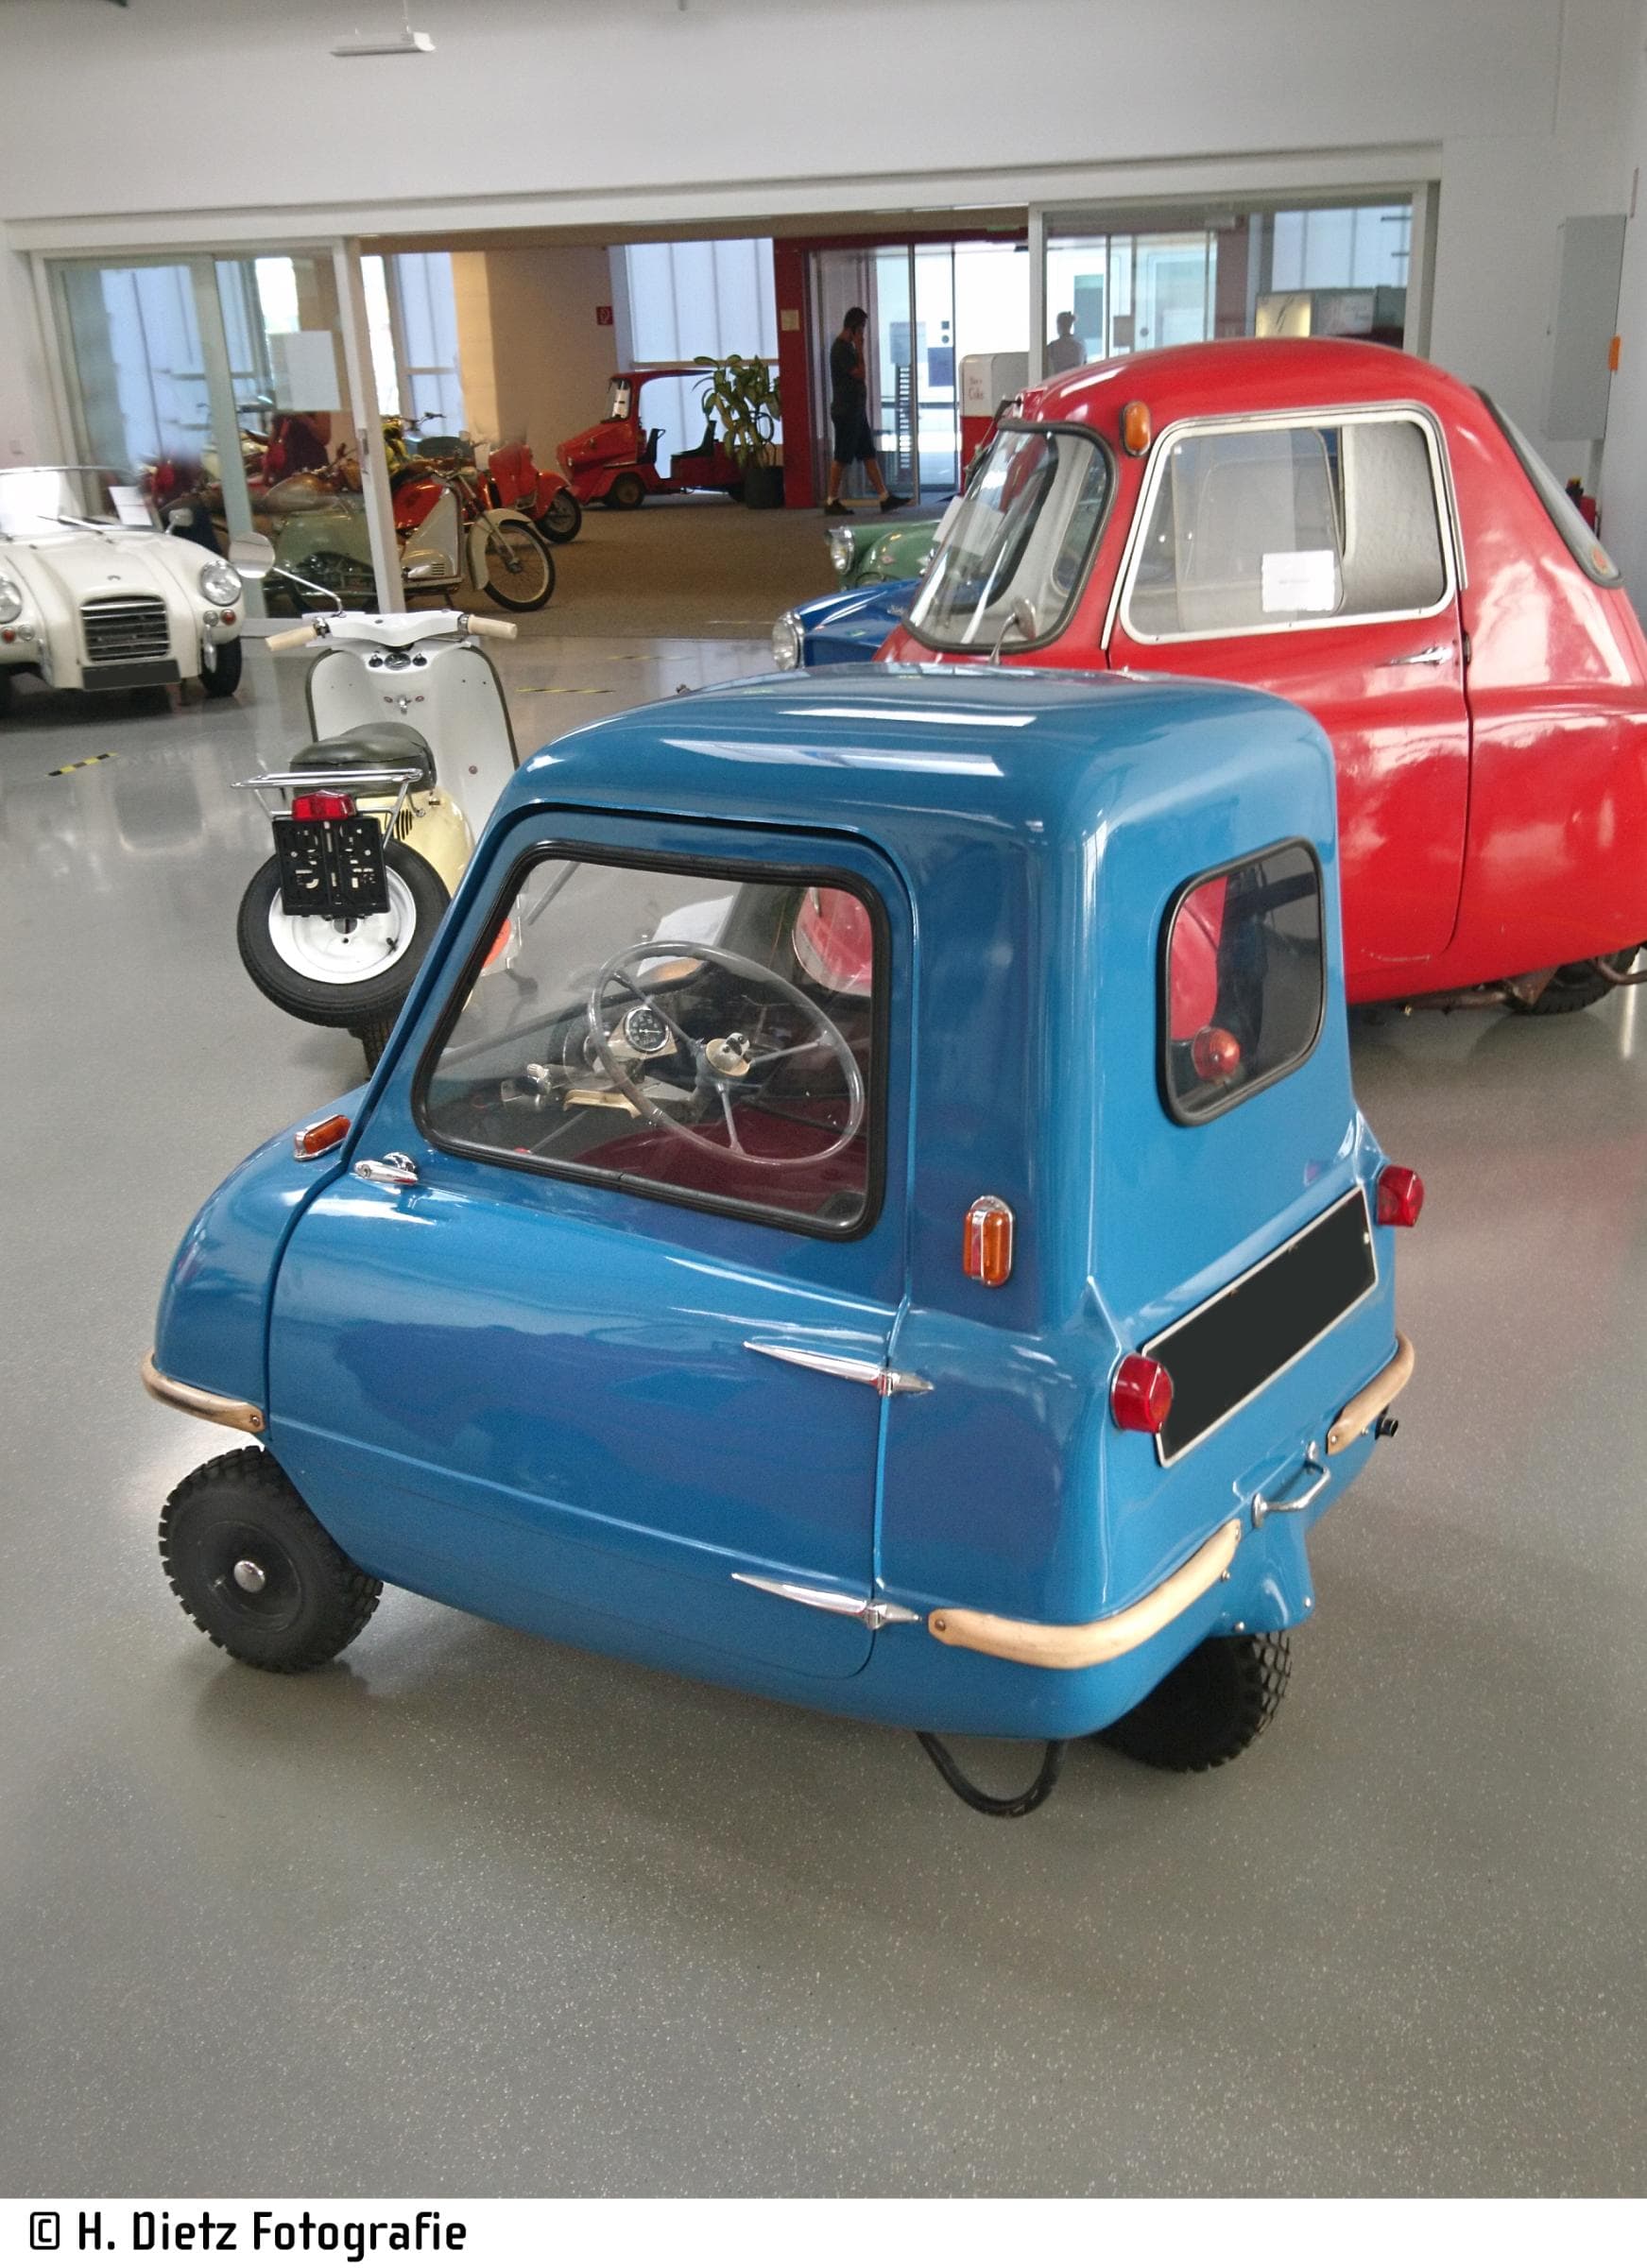 Blauer Peel P50, das kleinste Auto der Welt, parkt in einem Oldtimer-Museum. Man sieht von der Seite in den Fahrzeuginnenraum